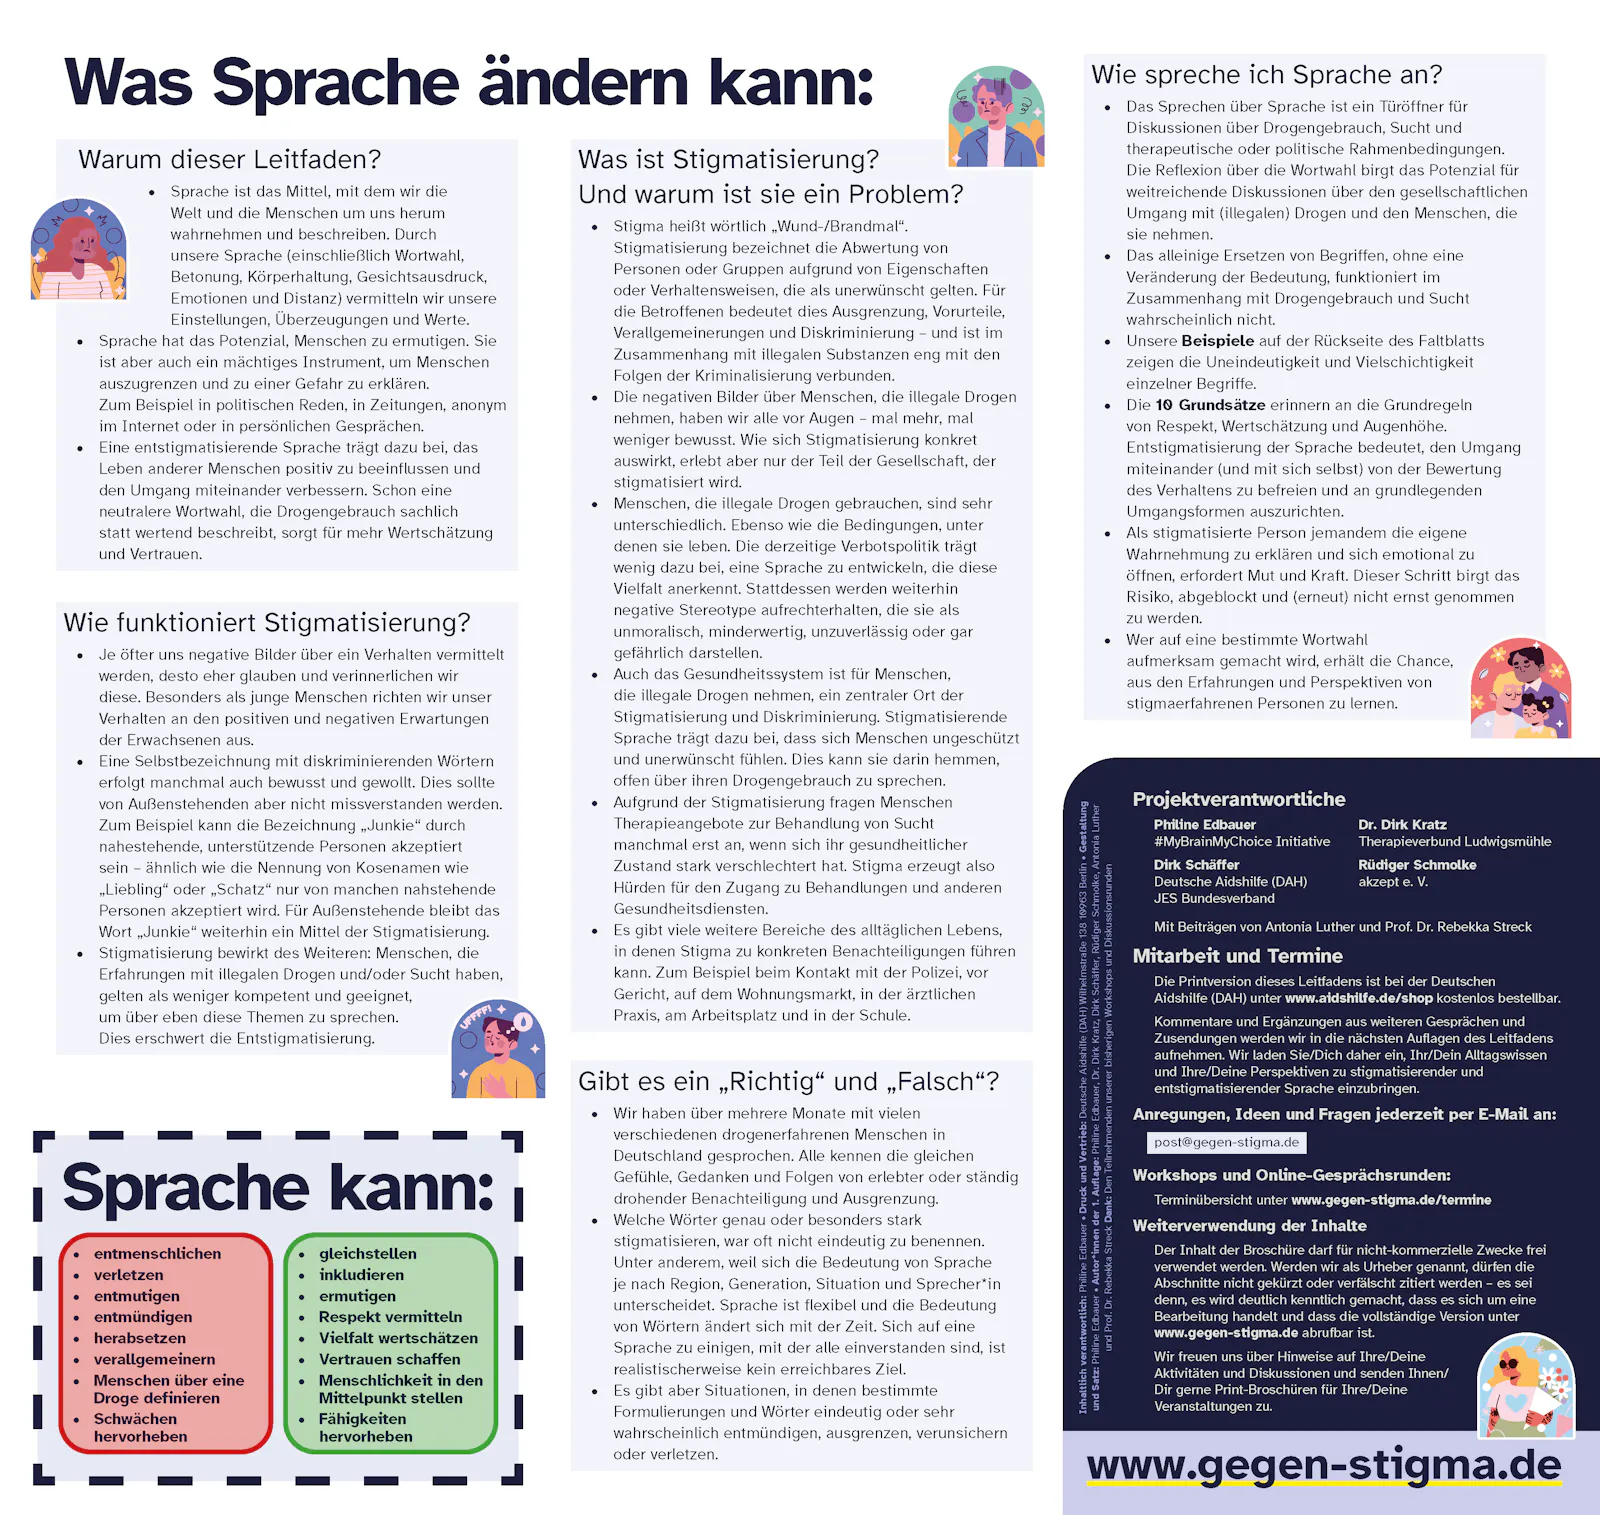 Seite 2 des Faltblatts. Textversion unter: www.gegen-stigma.de; Audio-Version in den Podcast Apps bei: "My Brain My Choice Zum Hören"